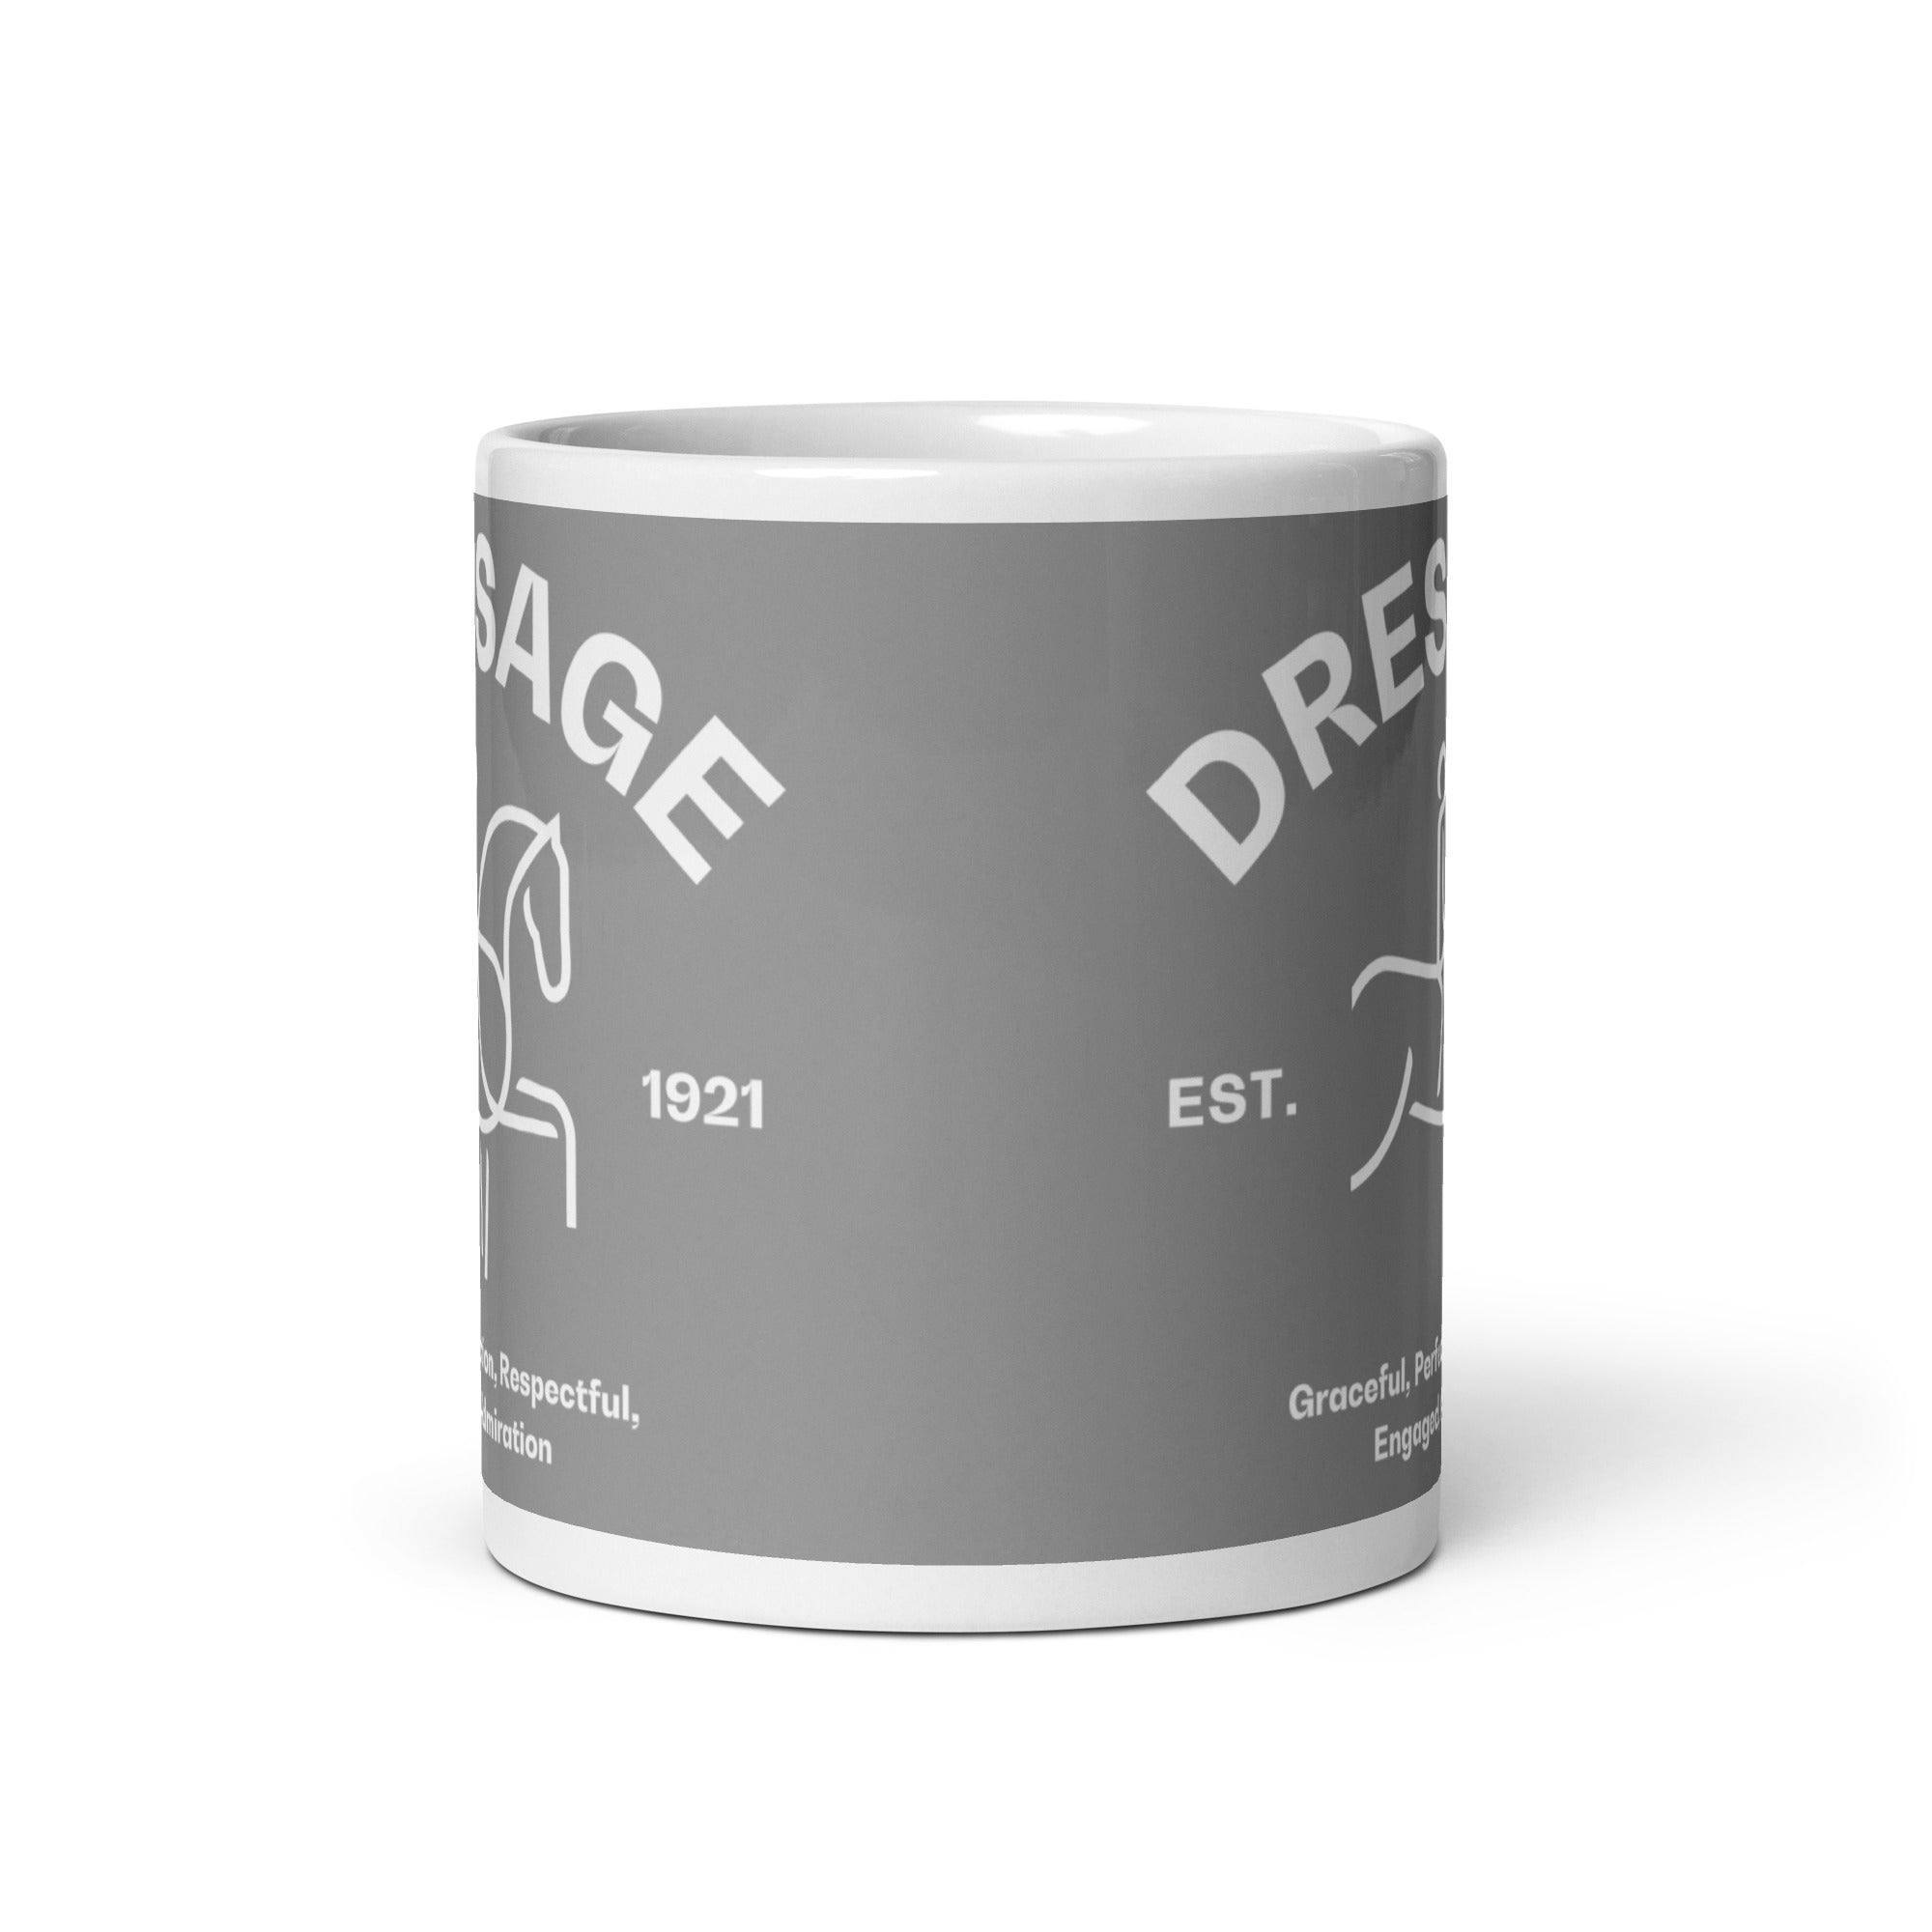 Dressage FEI Mug FEI Official Store